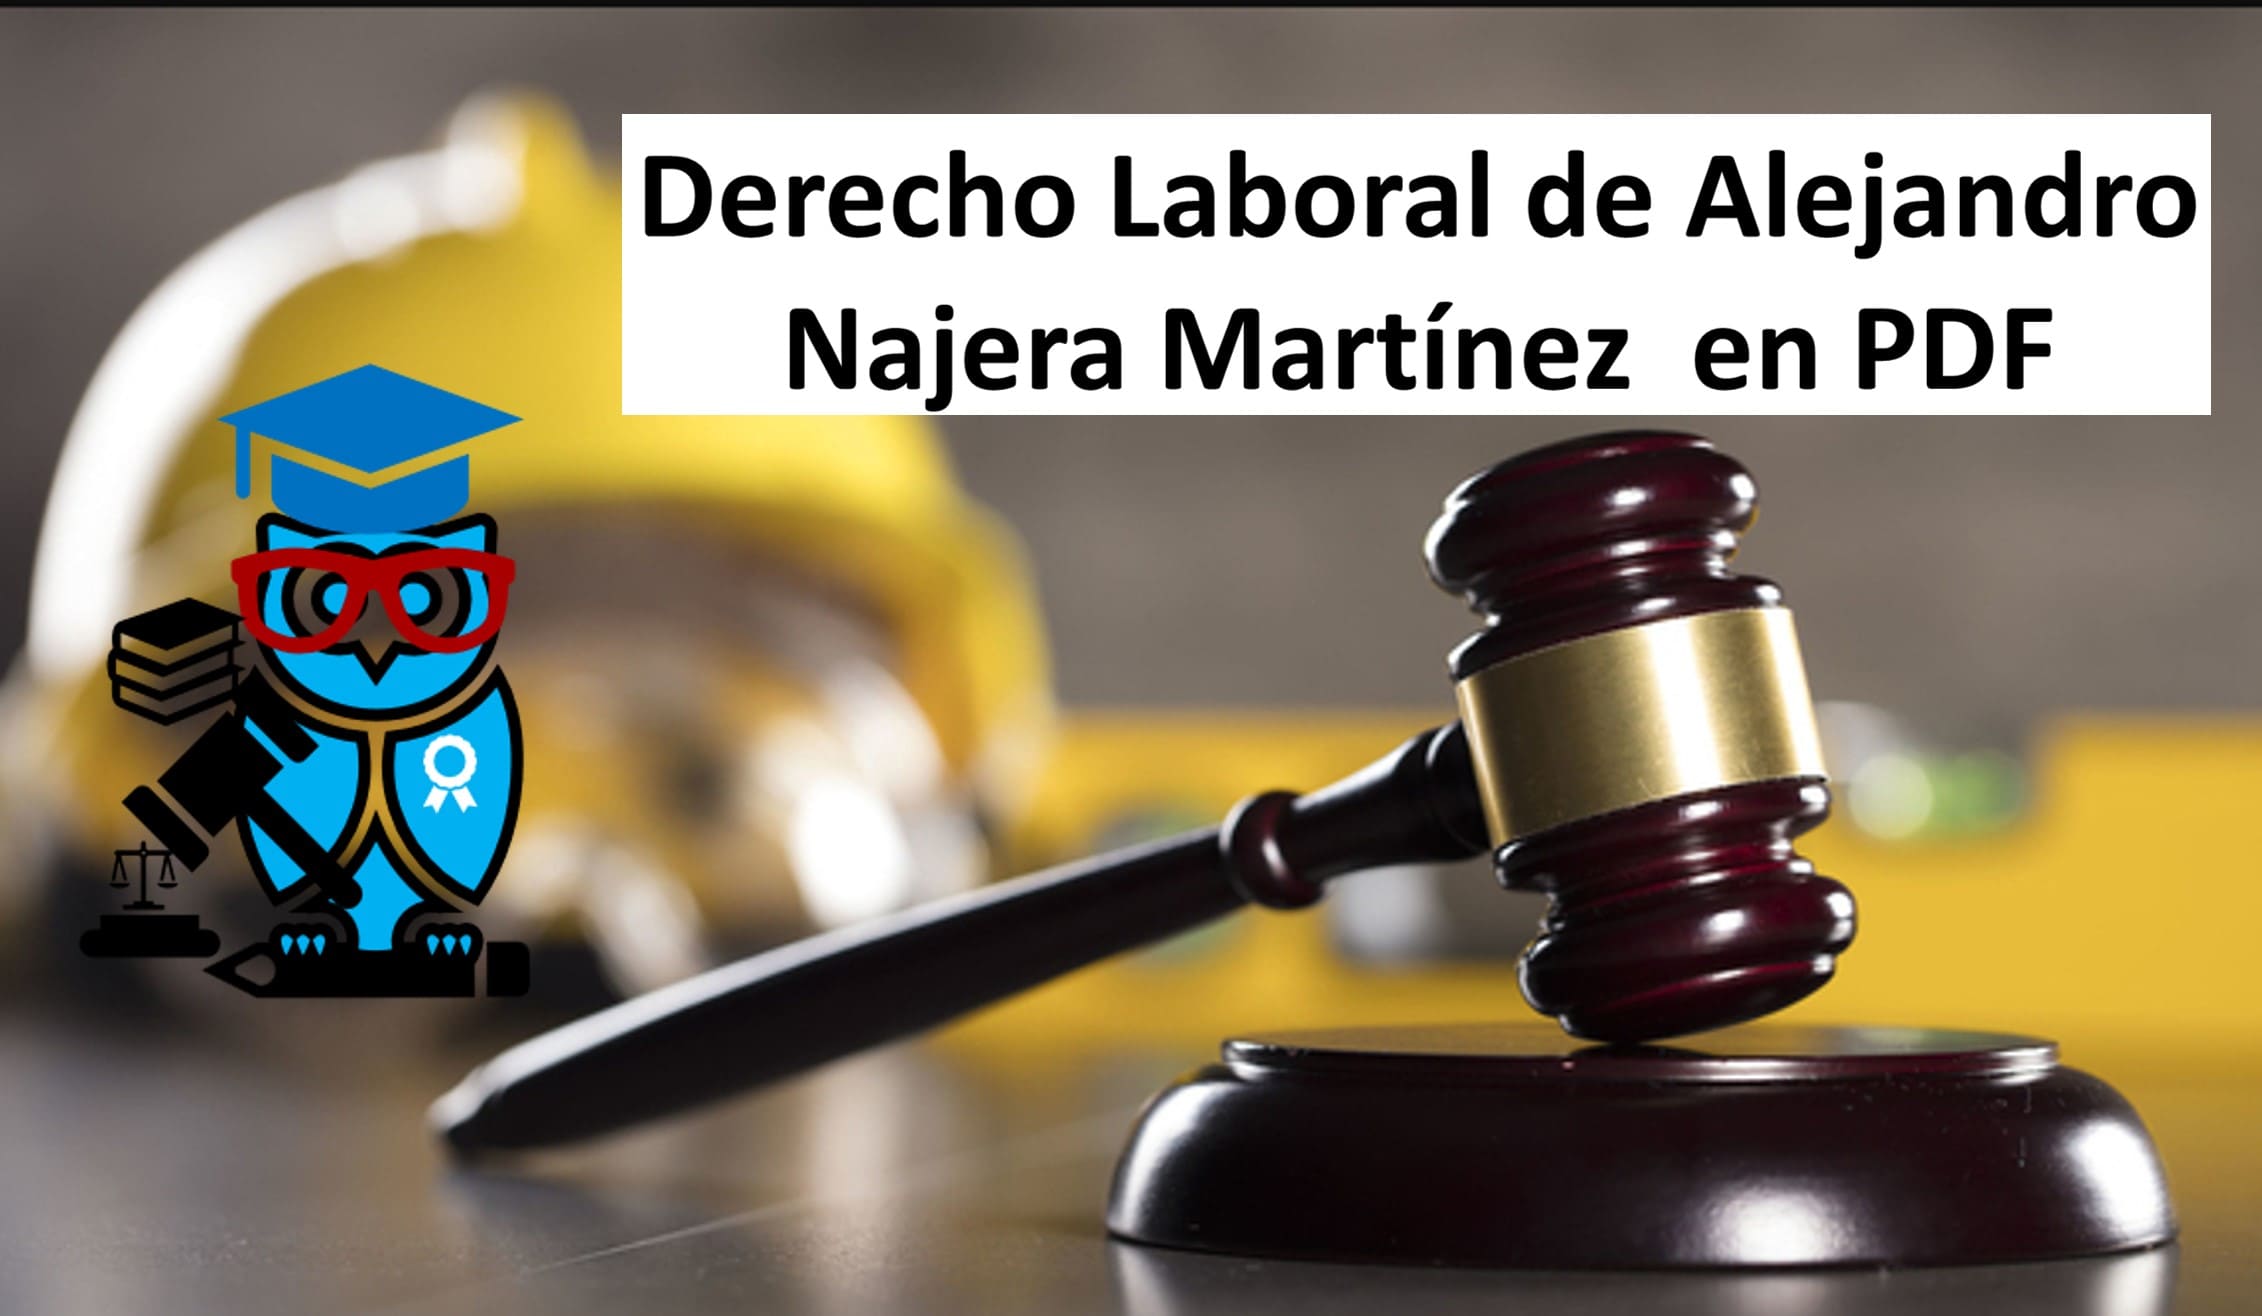 Derecho Laboral de Alejandro Najera Martínez en PDF